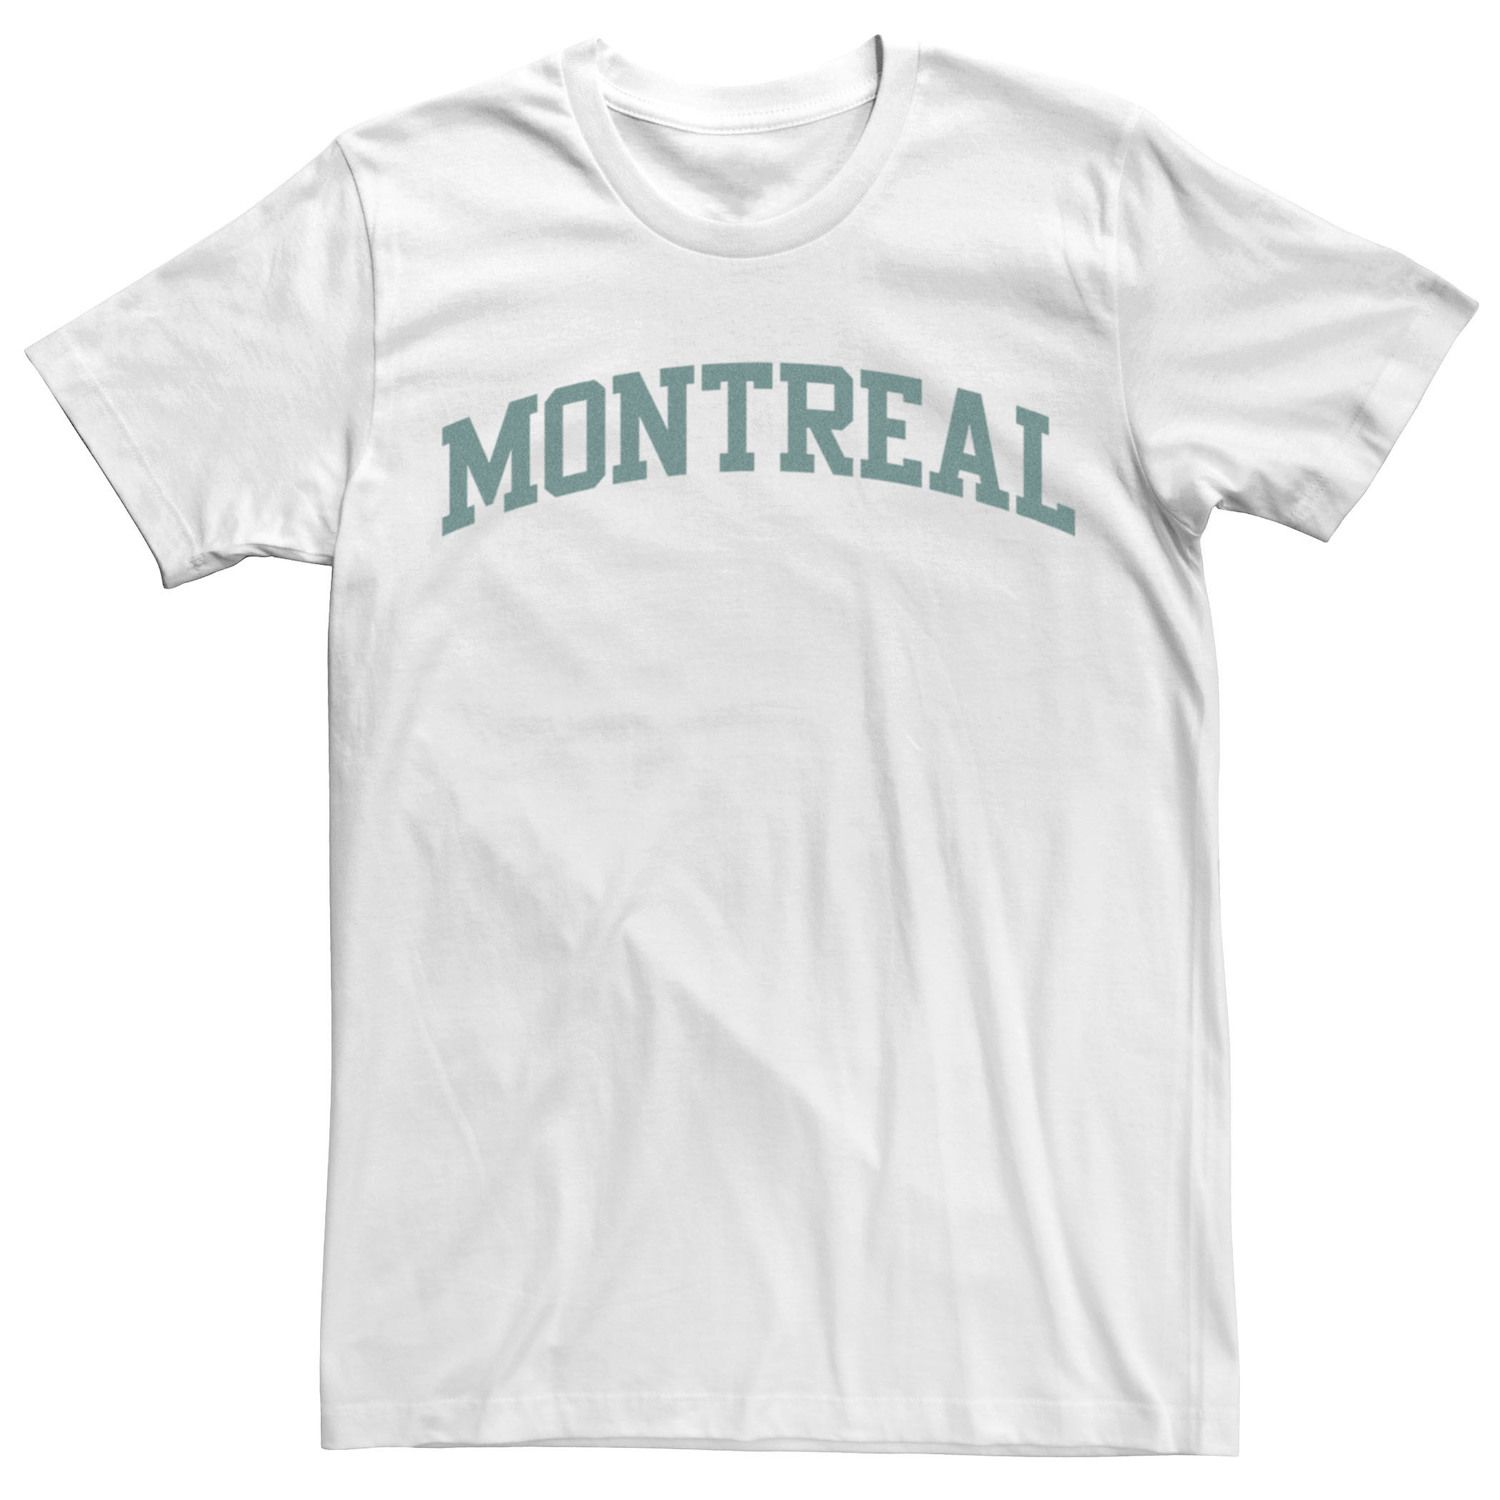 Мужская модная простая университетская футболка с надписью Montreal Licensed Character